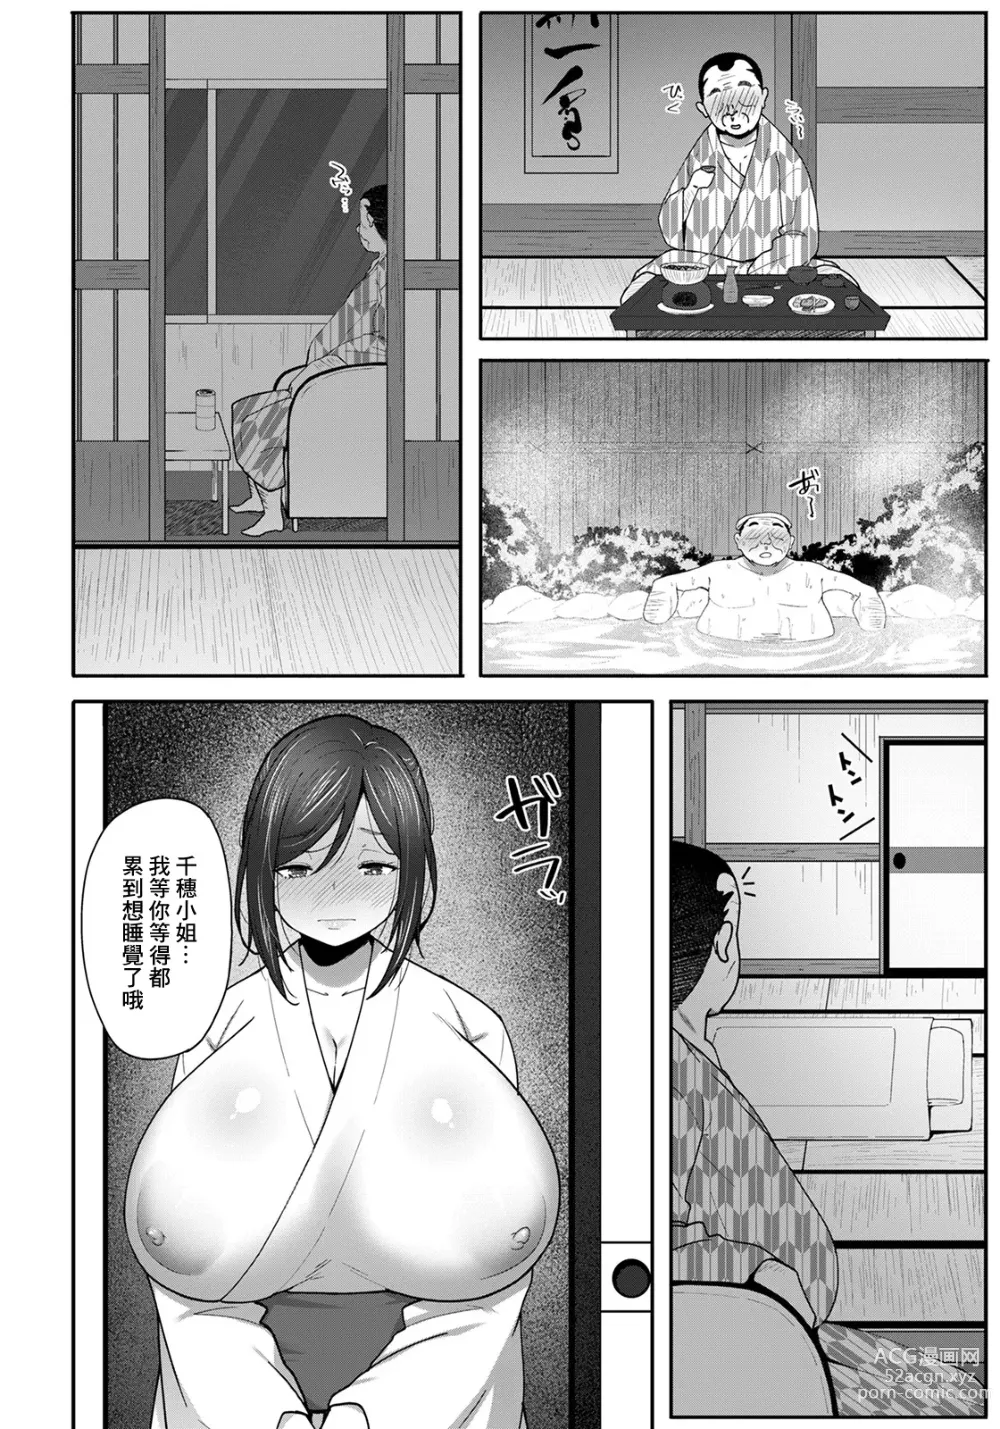 Page 6 of manga Okami no Netorare Omotenashi